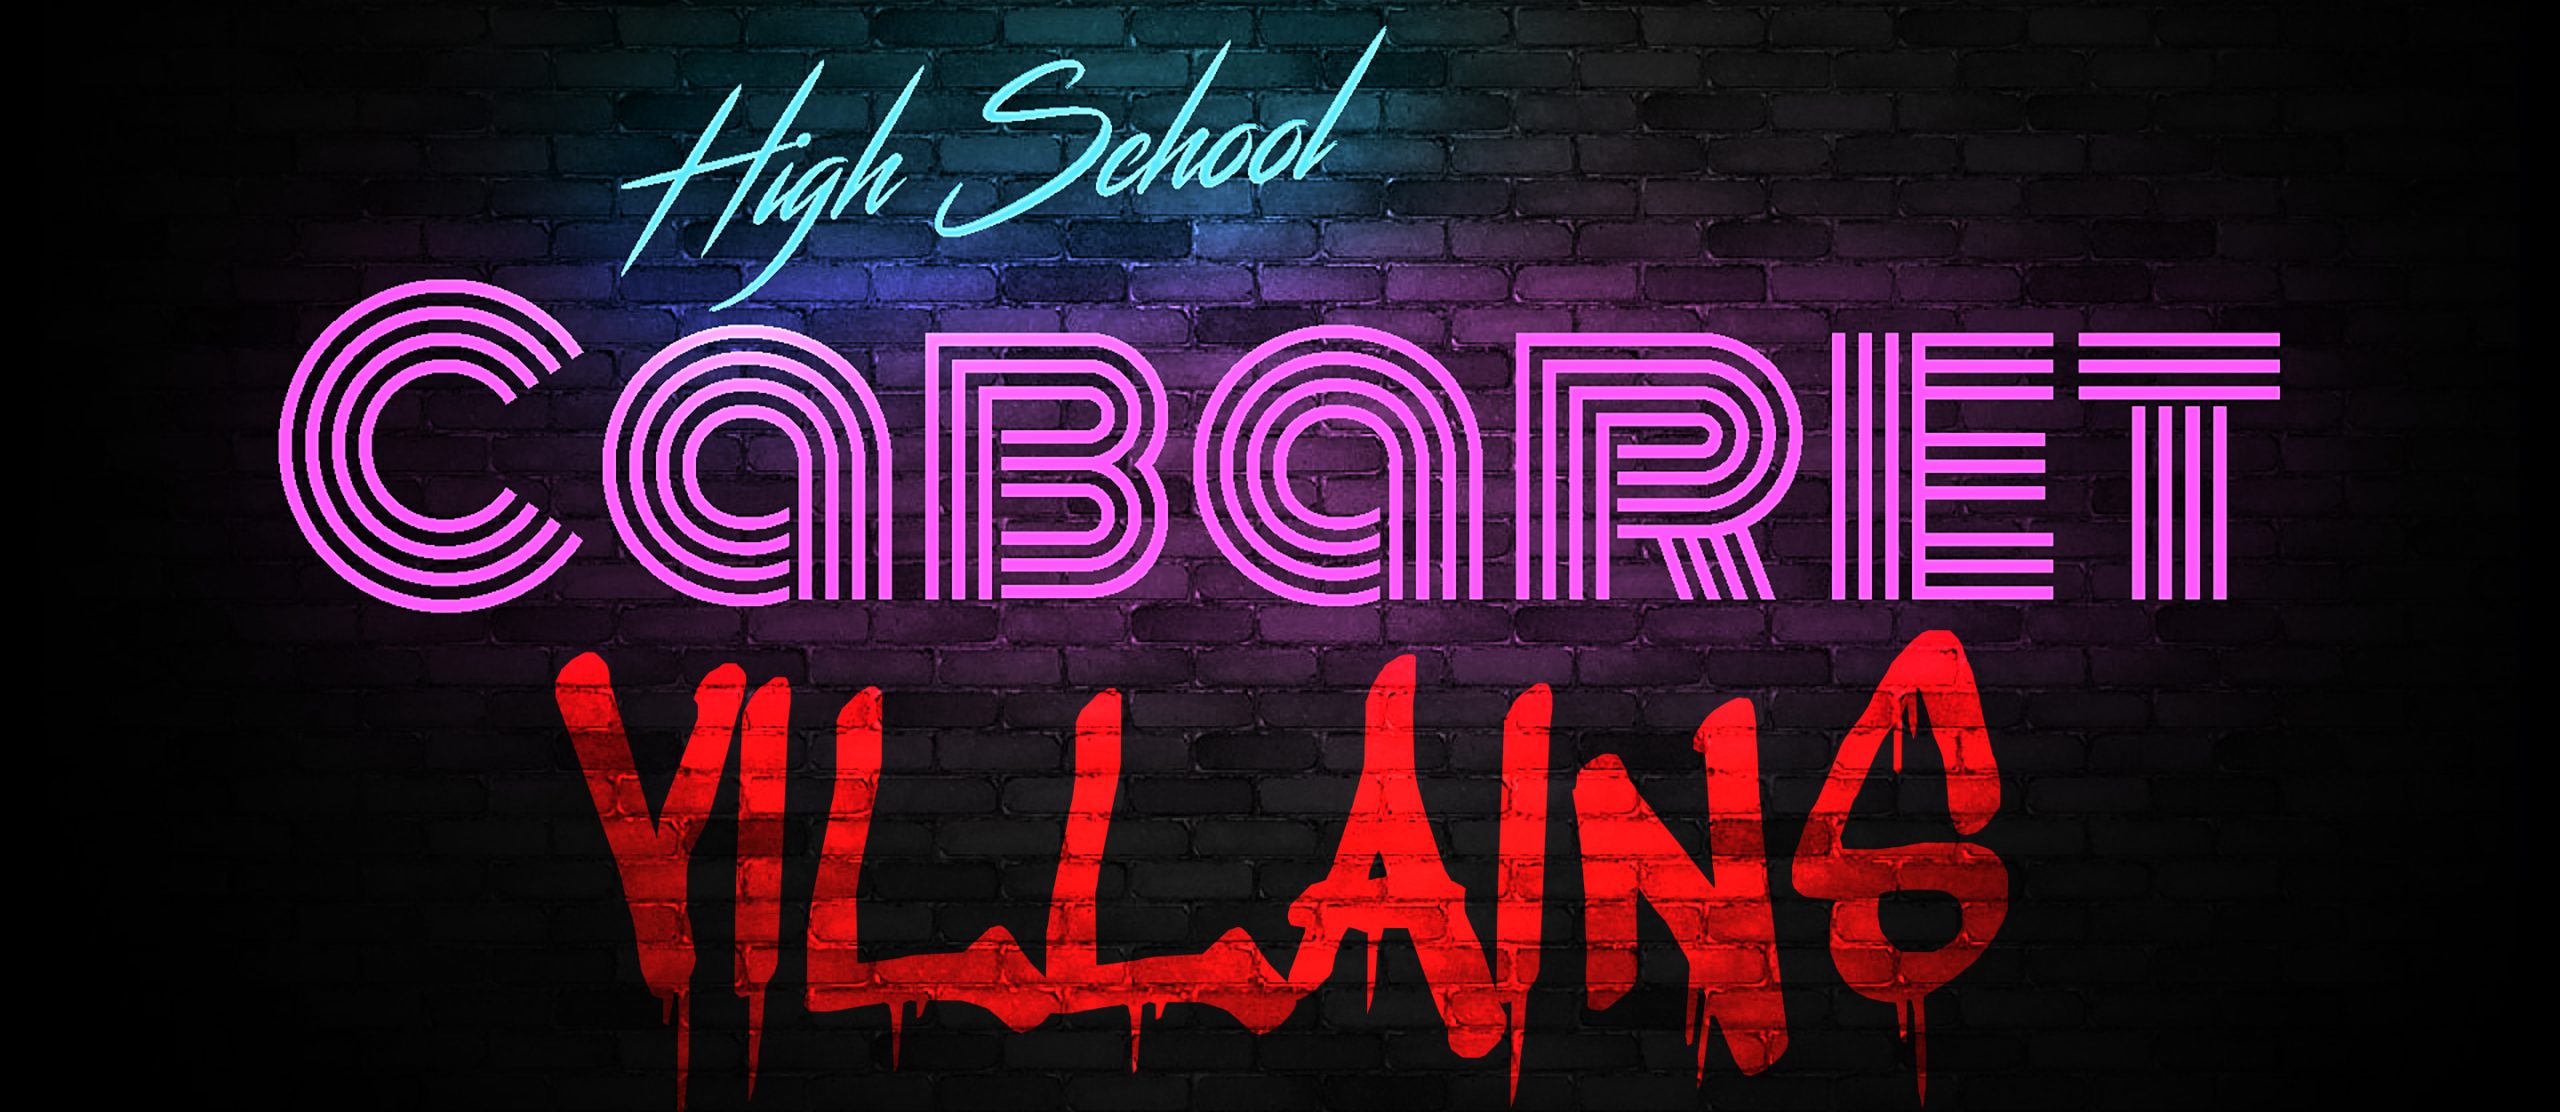 High School Cabaret | Villains